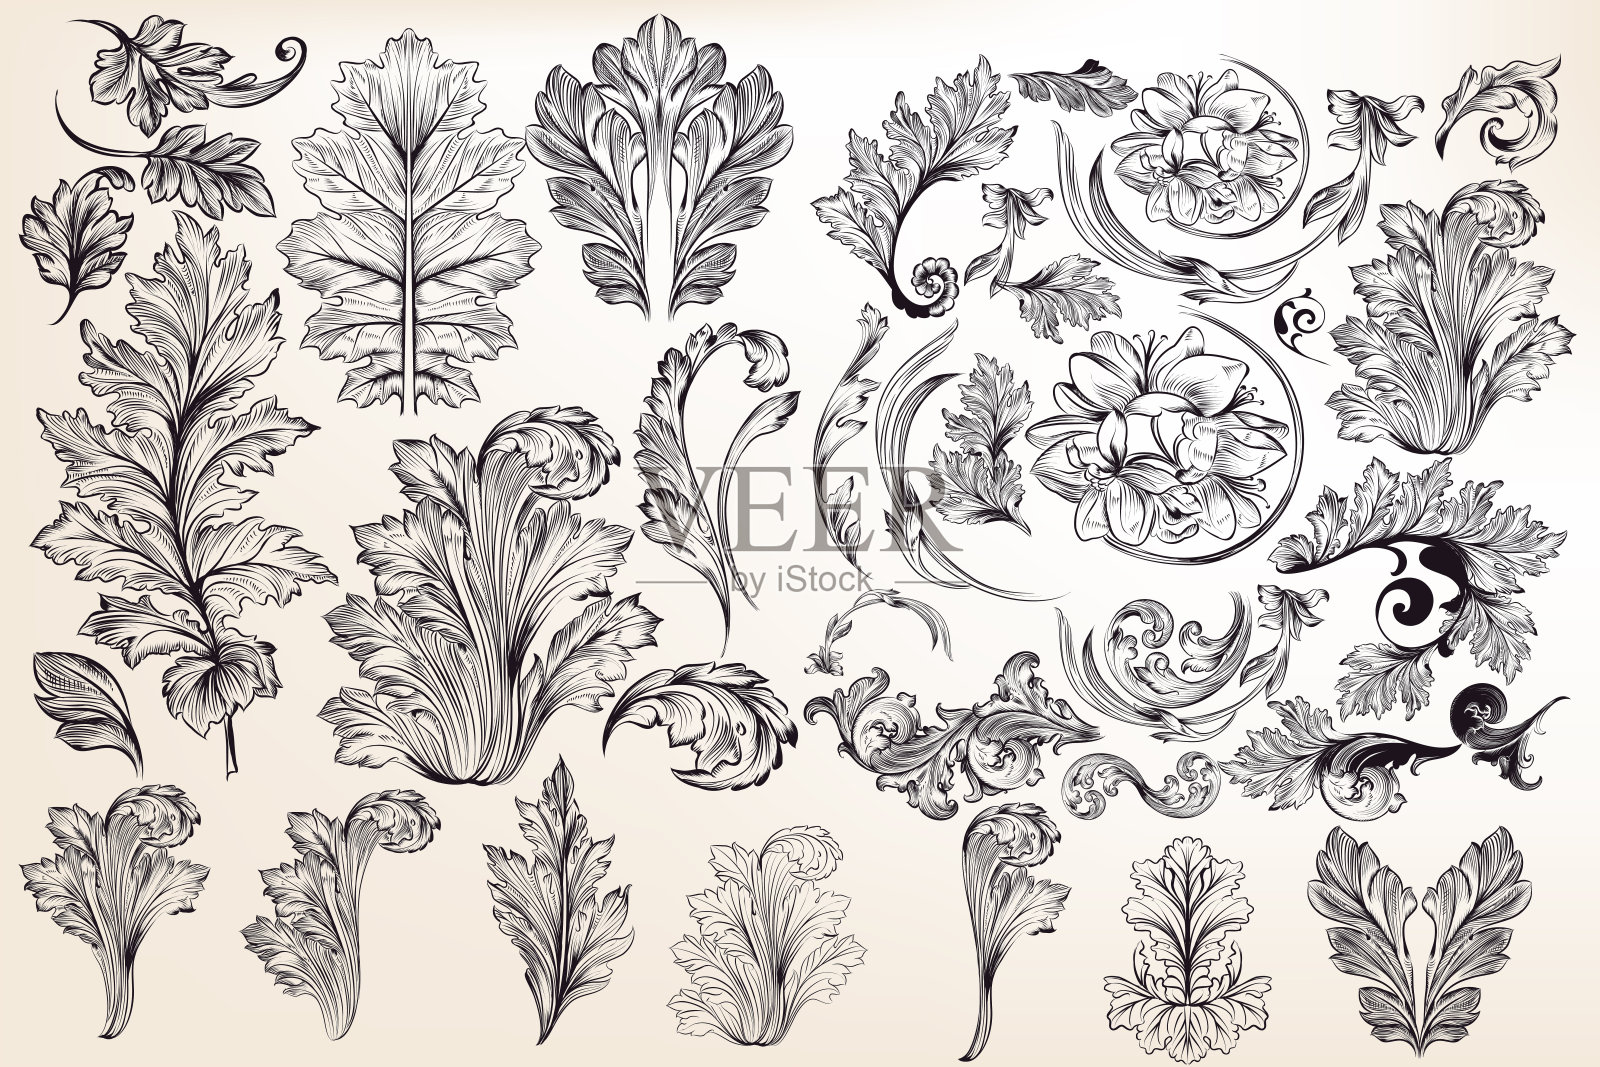 复古风格的vector装饰花卉元素收集设计元素图片